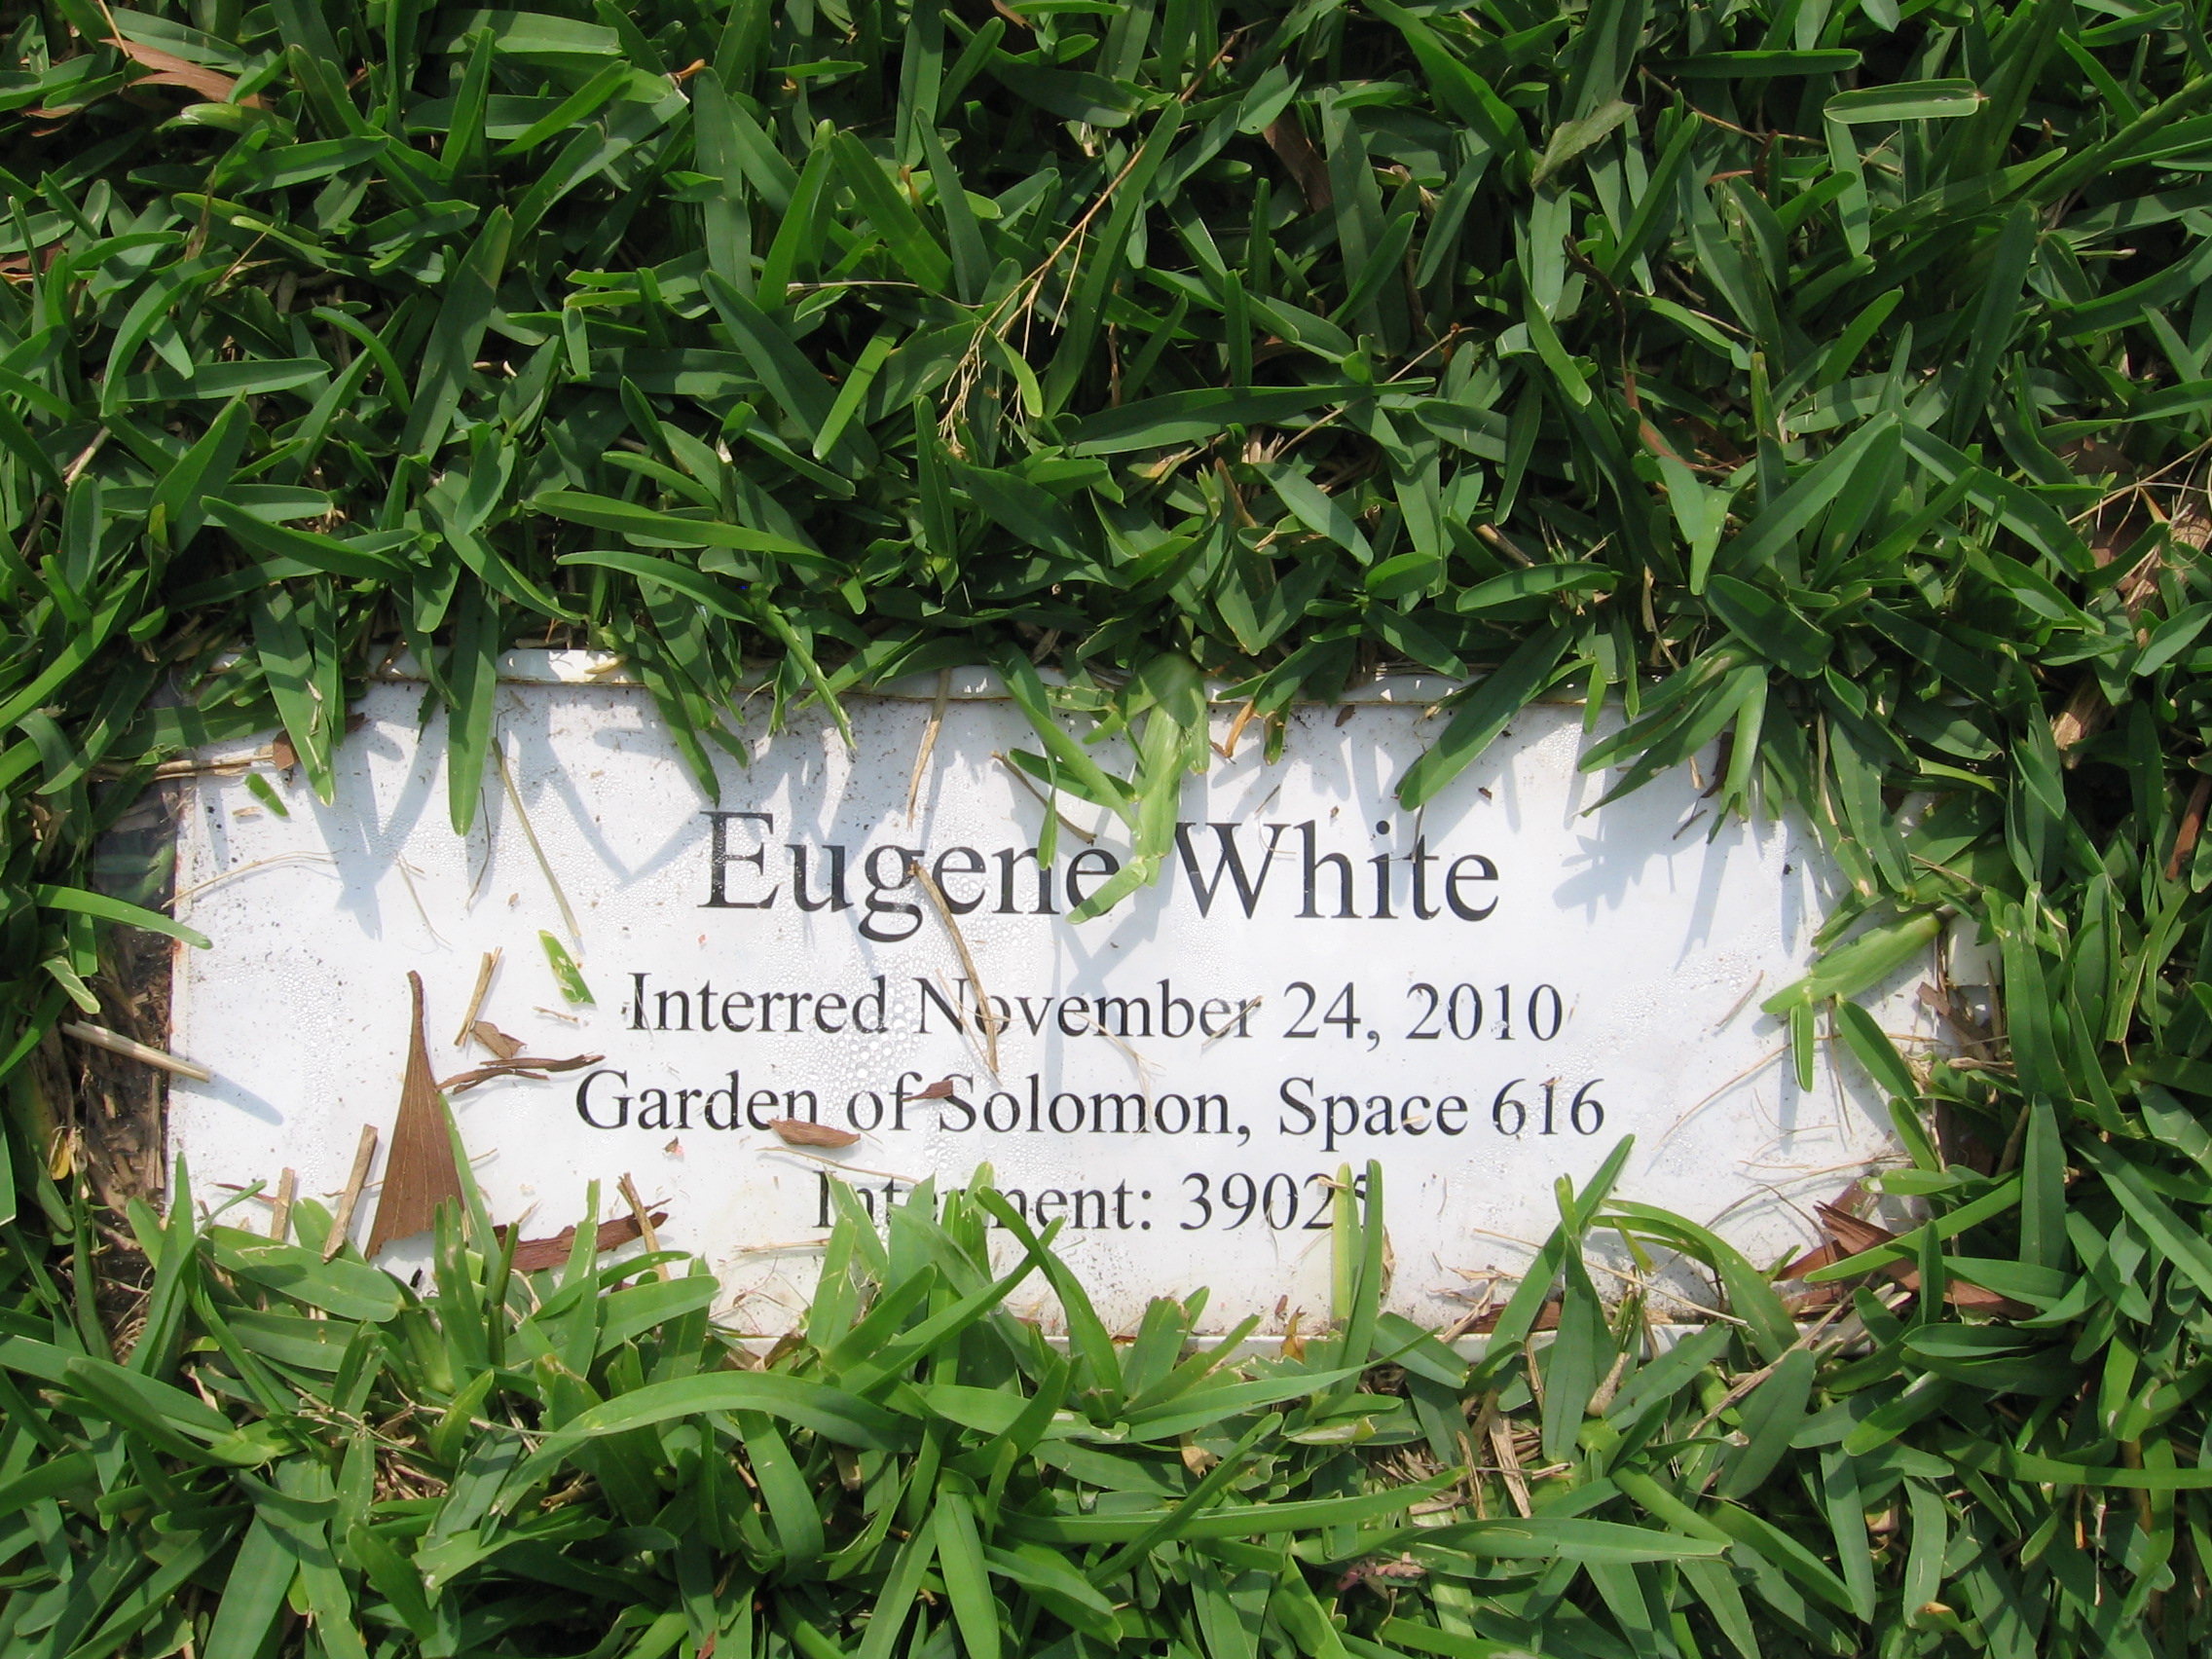 Eugene White